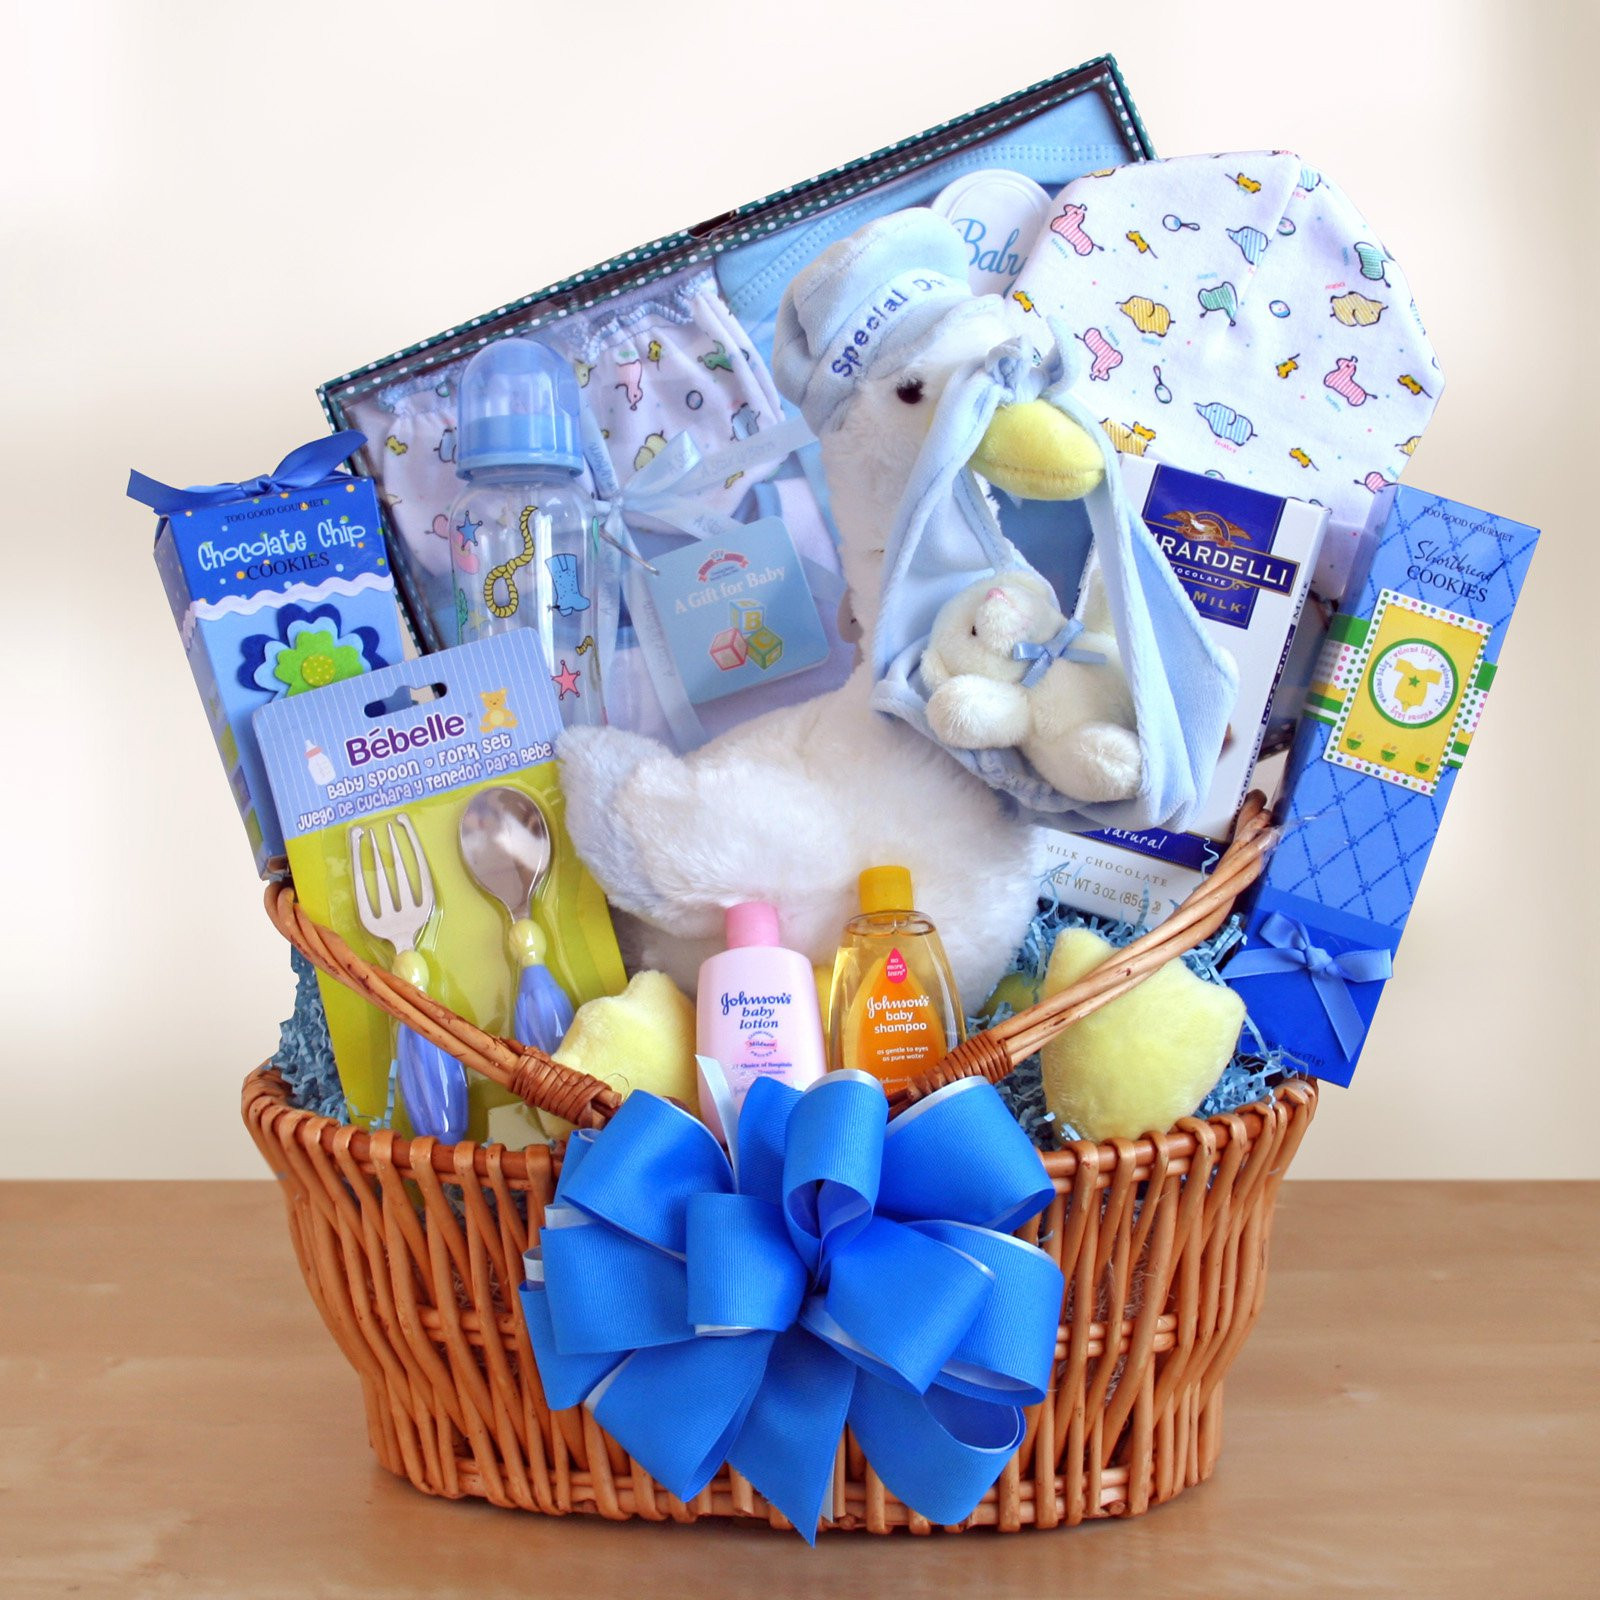 Newborn Baby Boy Gift Ideas
 Special Stork Delivery Baby Boy Gift Basket Gift Baskets